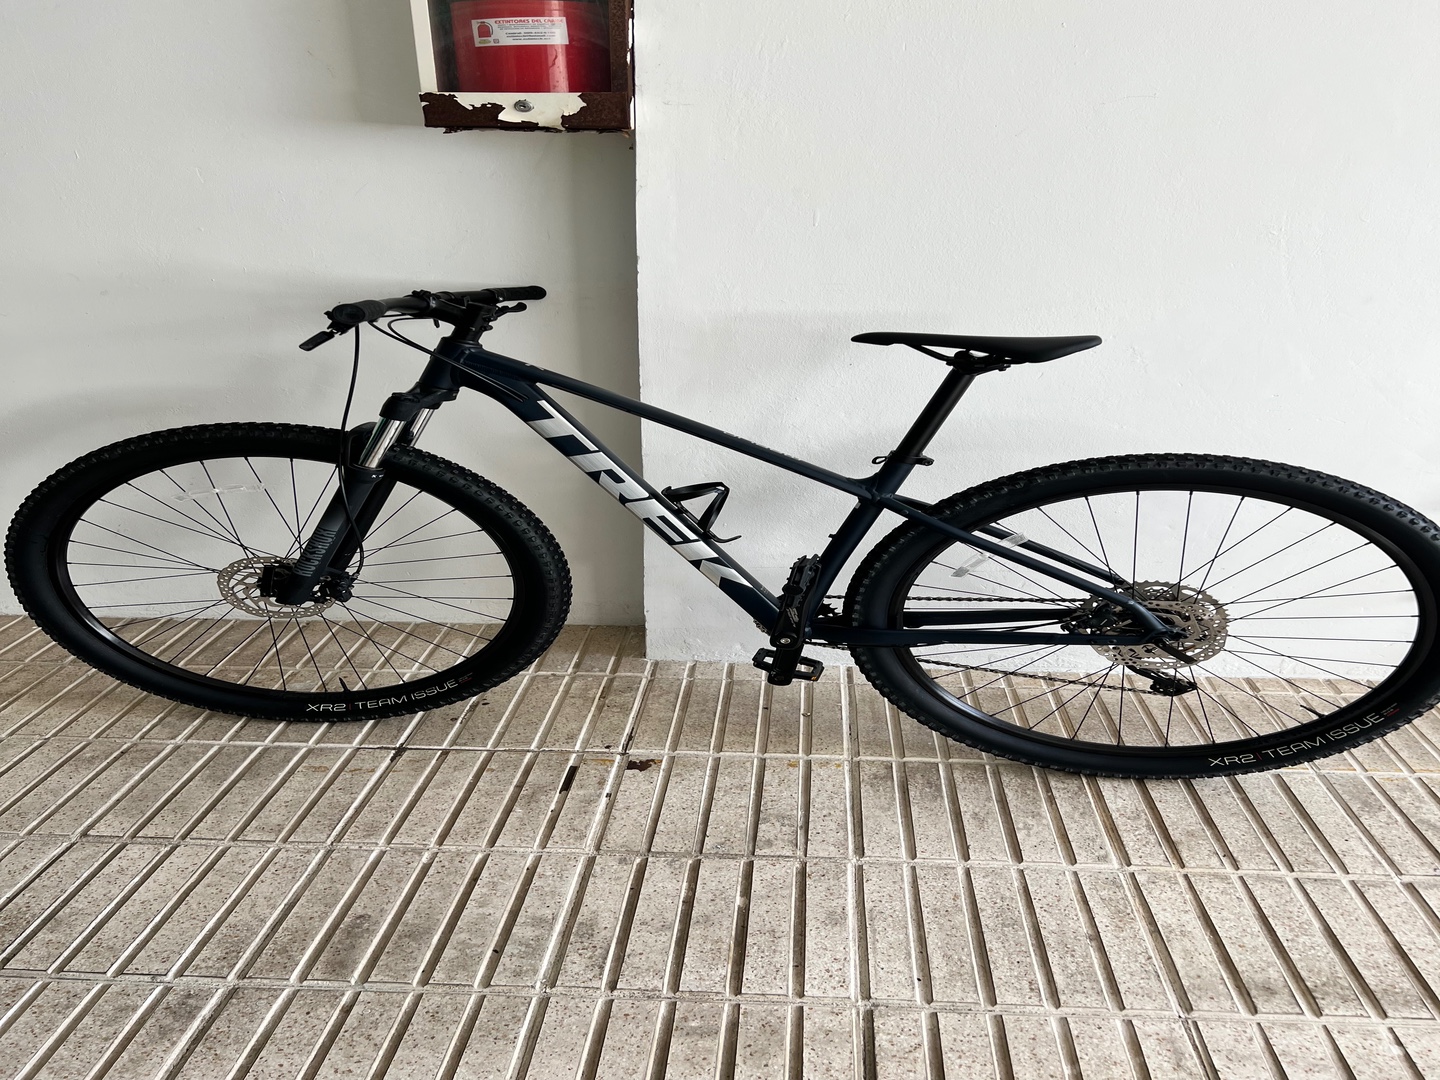 Bicicleta Marlin 7 2021 comprada en Bikes 4 You, poco uso unico dueño.